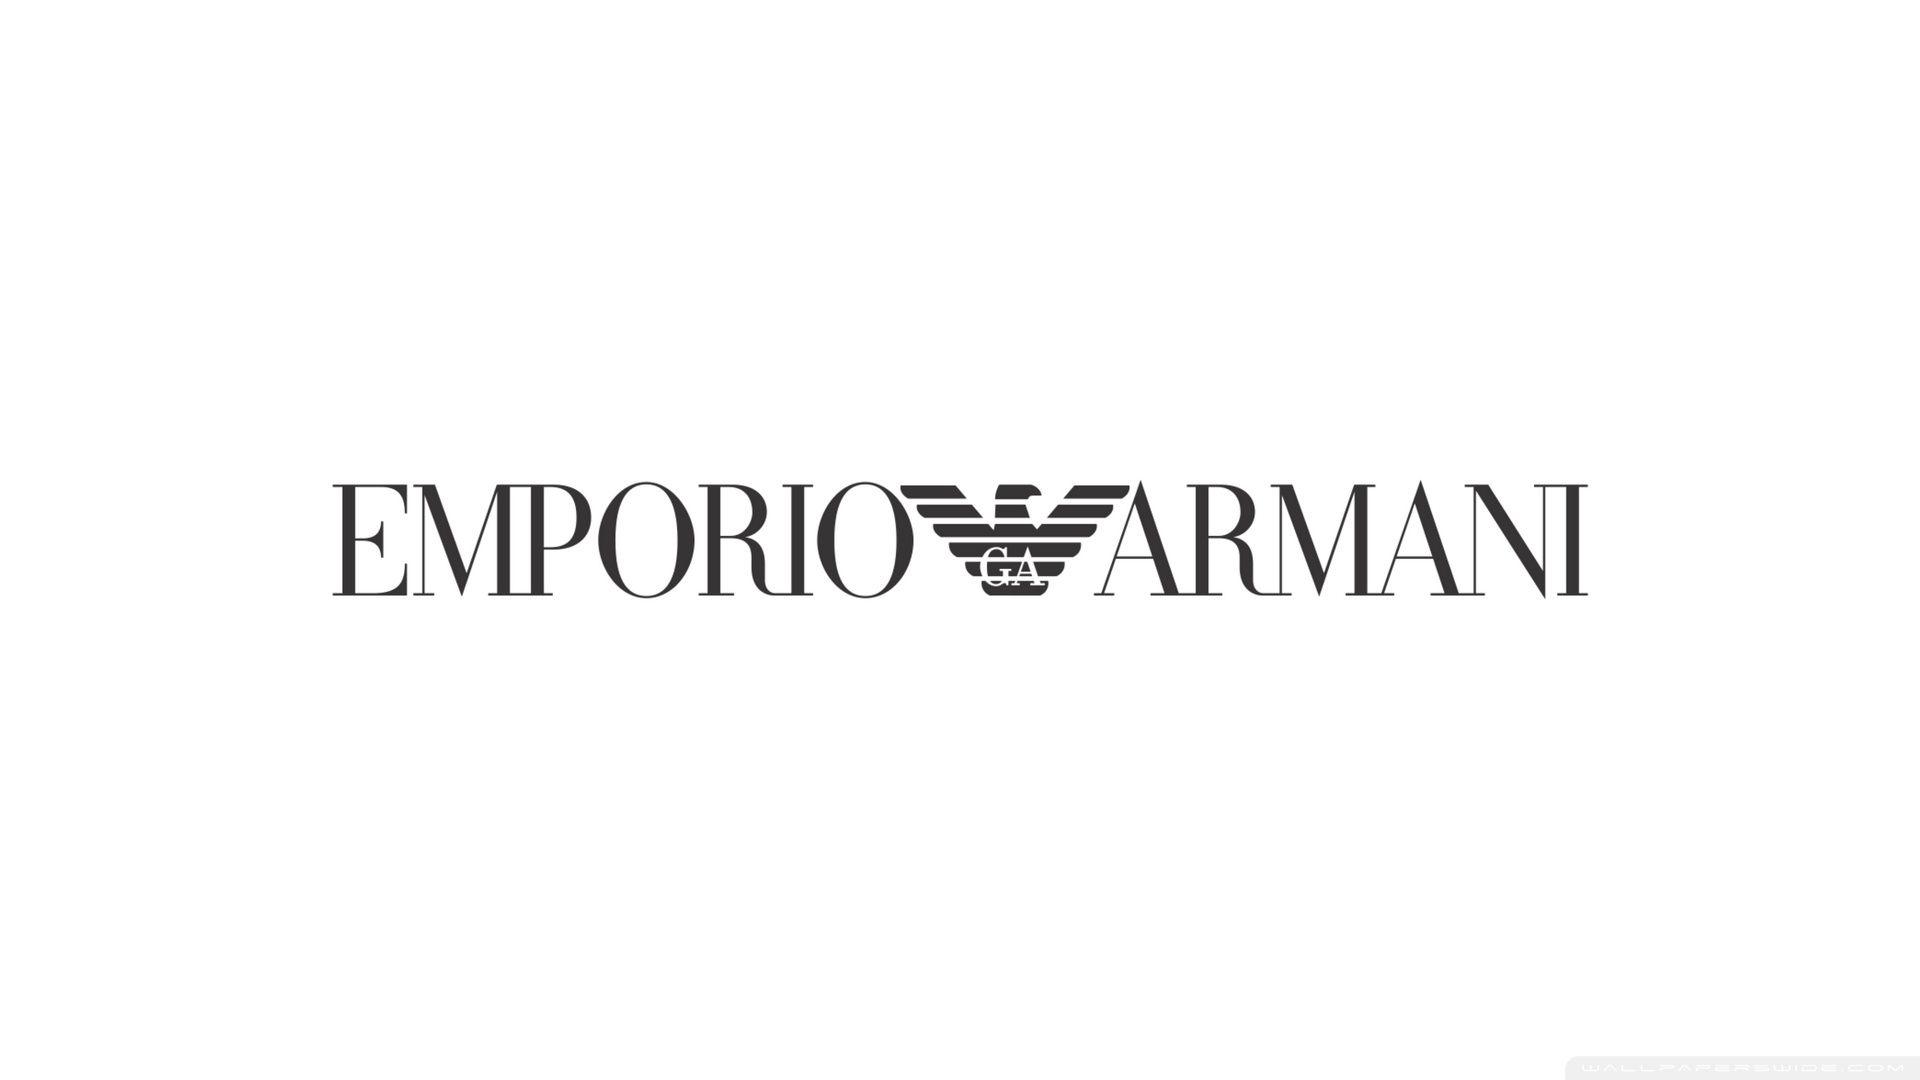 Emporio Armani ❤ K 2K Desk 4K Wallpapers for K Ultra 2K TV • Wide